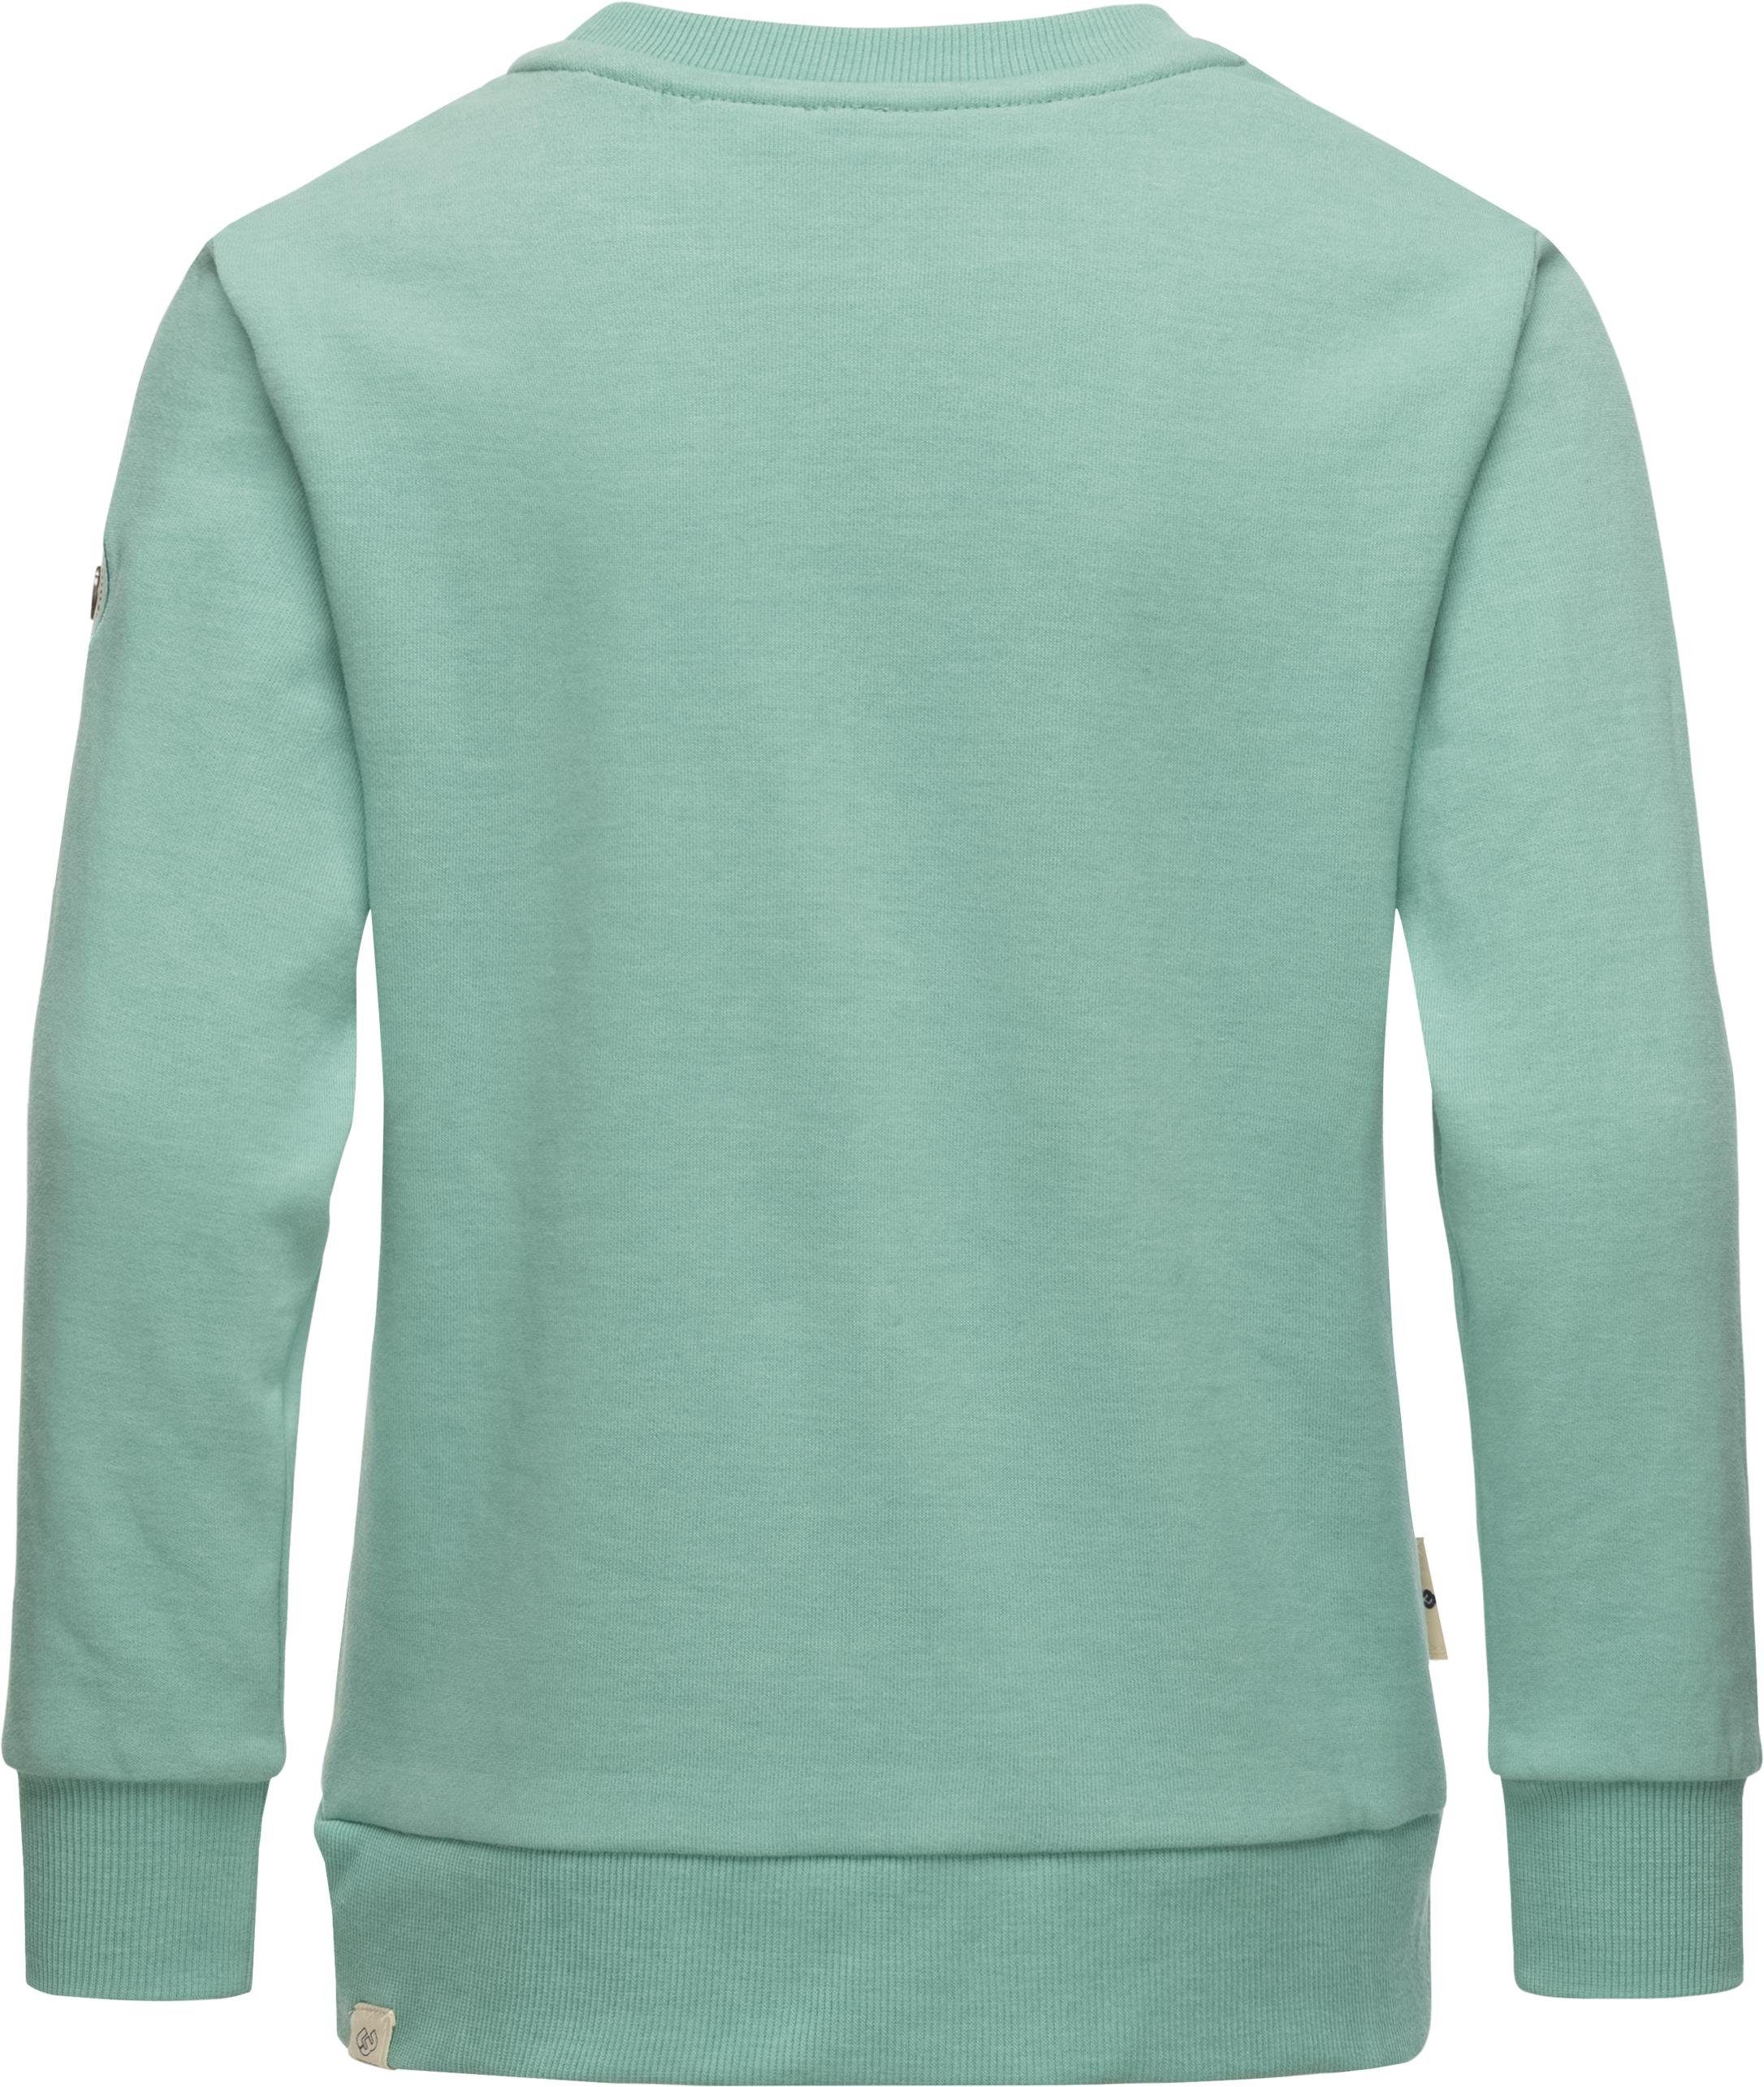 Ragwear Sweater Evka Print Print blau mit Mädchen stylisches Organic coolem Sweatshirt